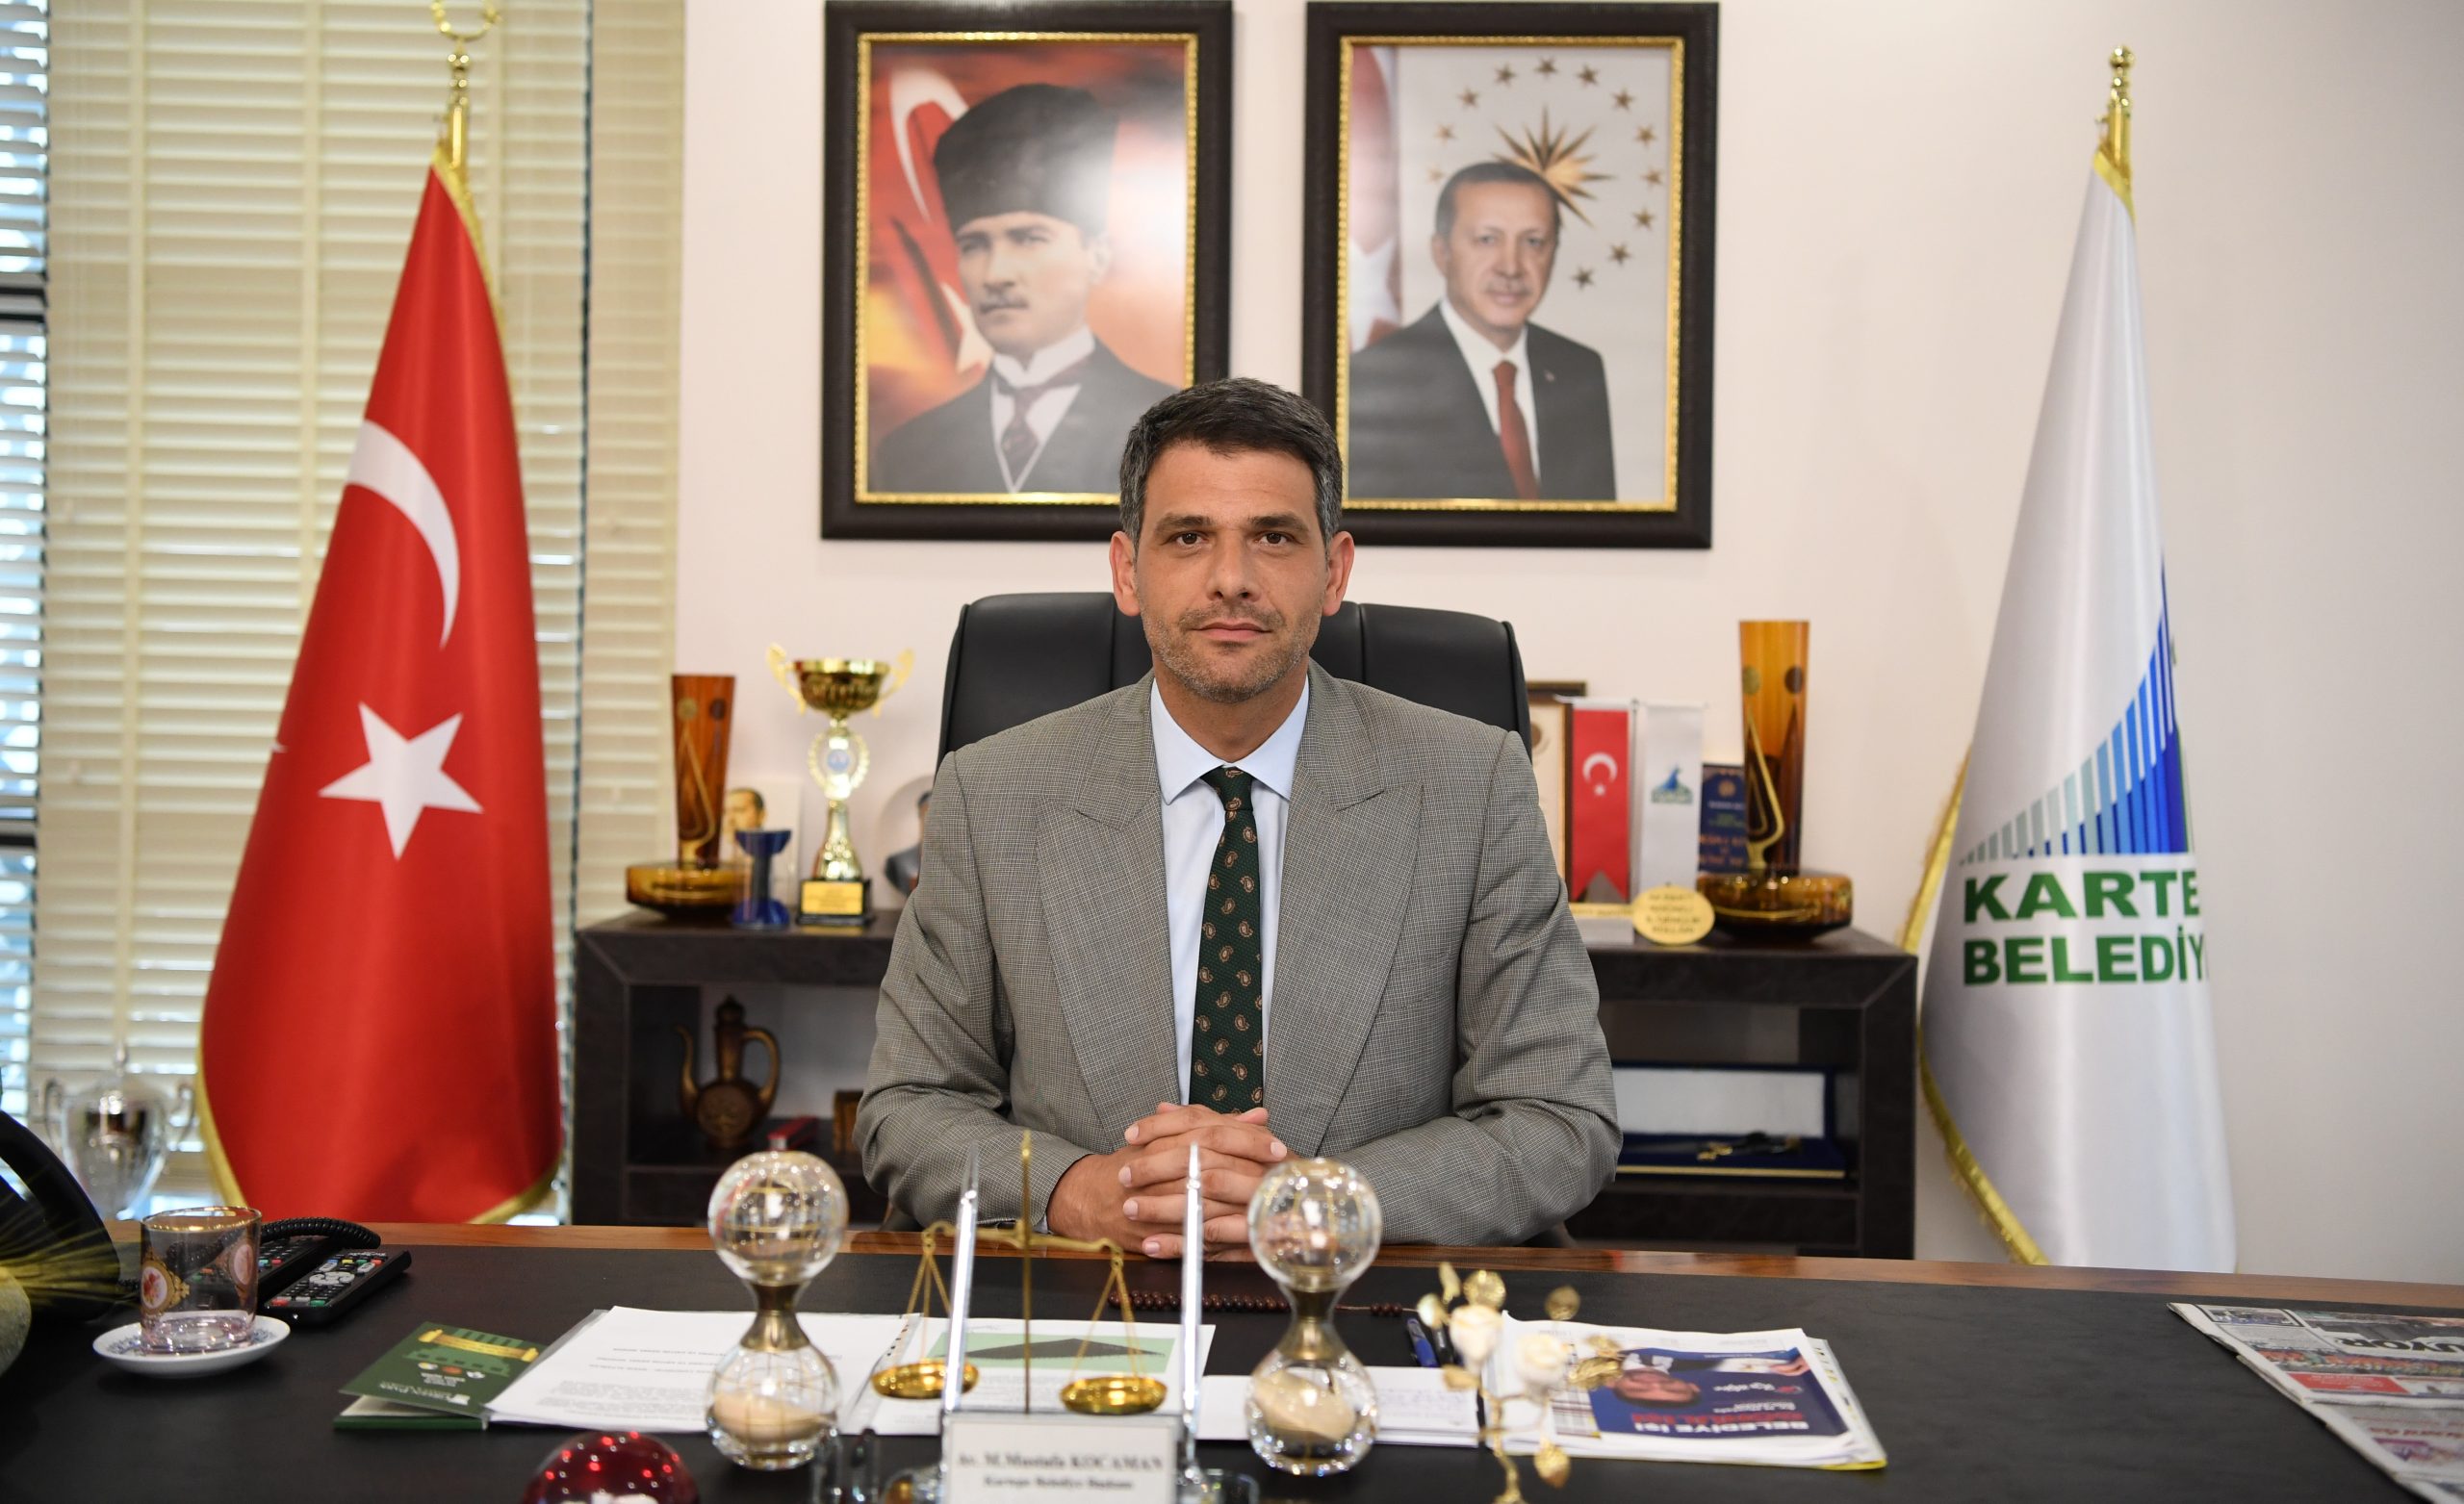 Kartepe Belediye Başkanı Mustafa Kocaman